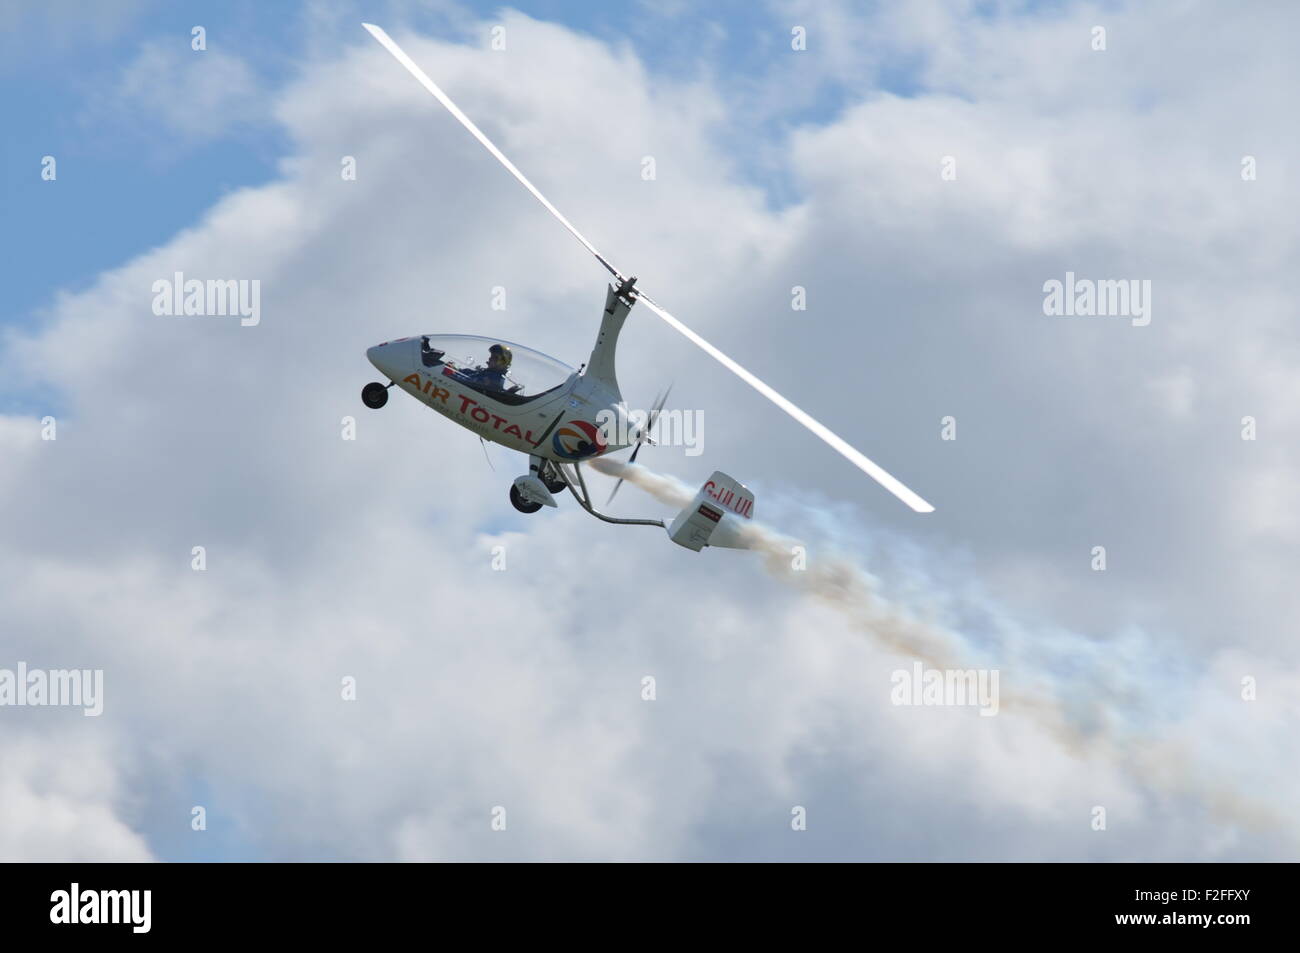 Der Calidus Tragschrauber fliegen bei einer Airshow mit weißer Rauch Stockfoto